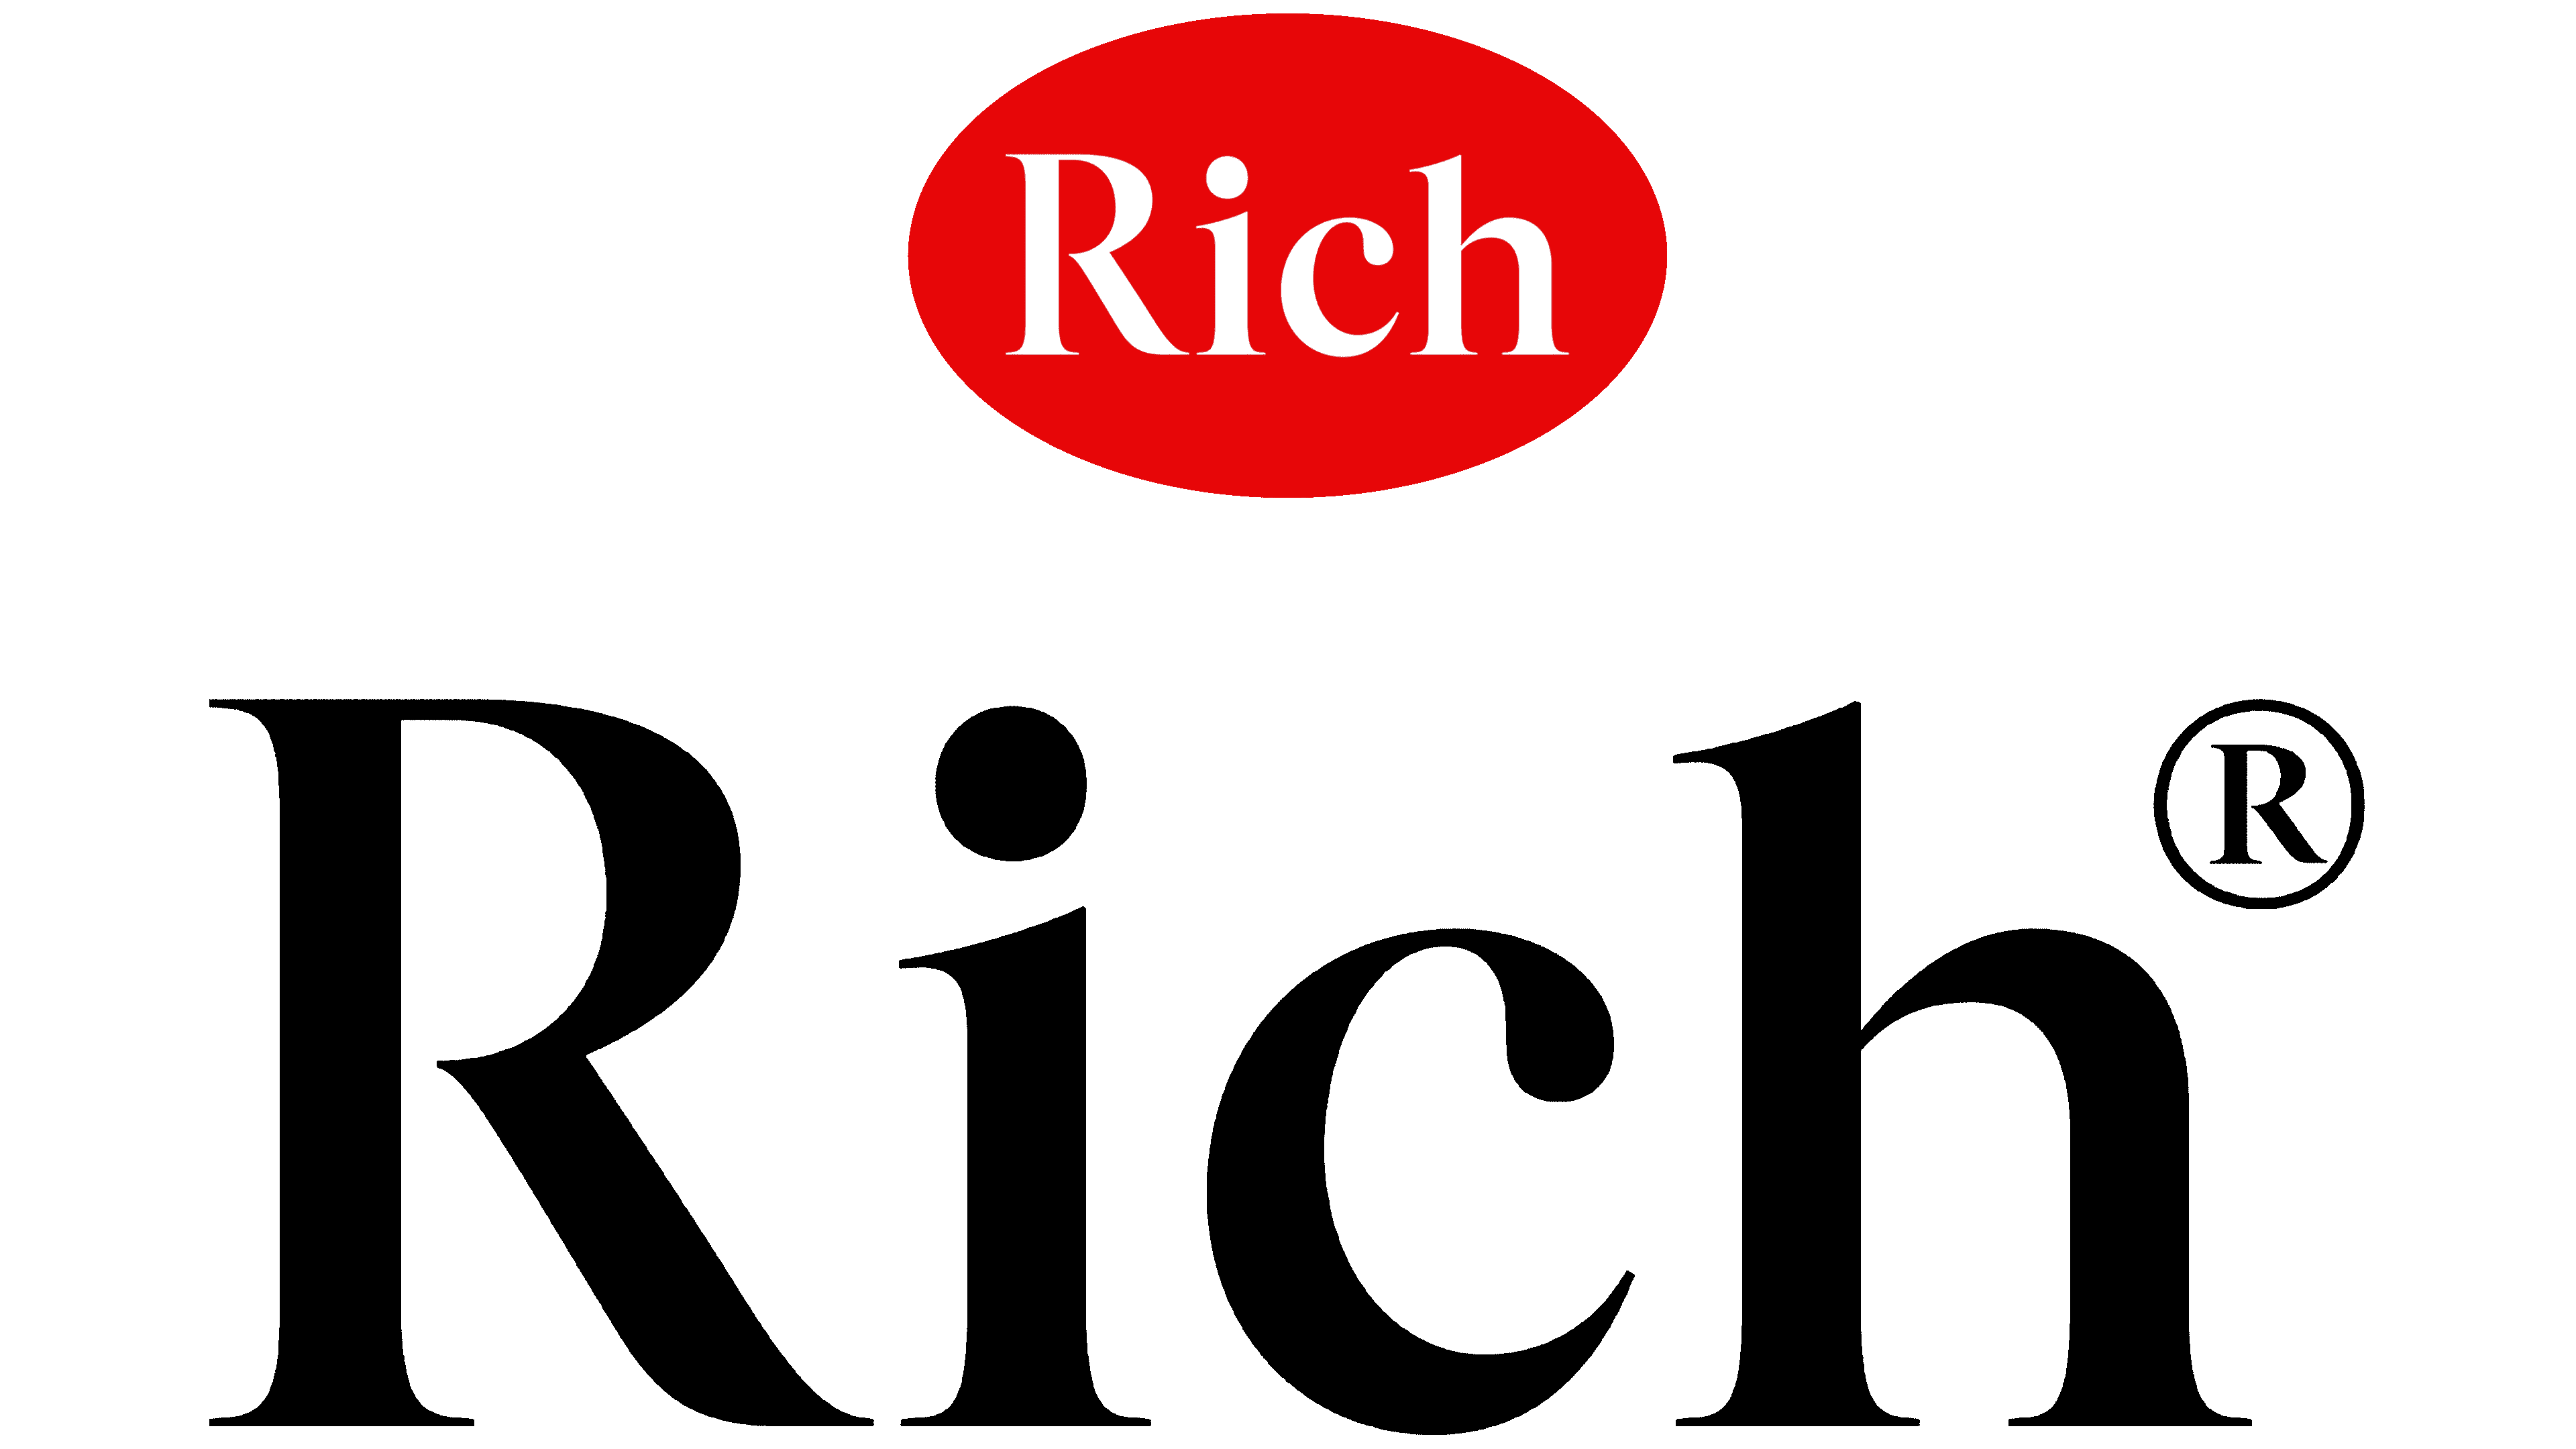 Rich lot